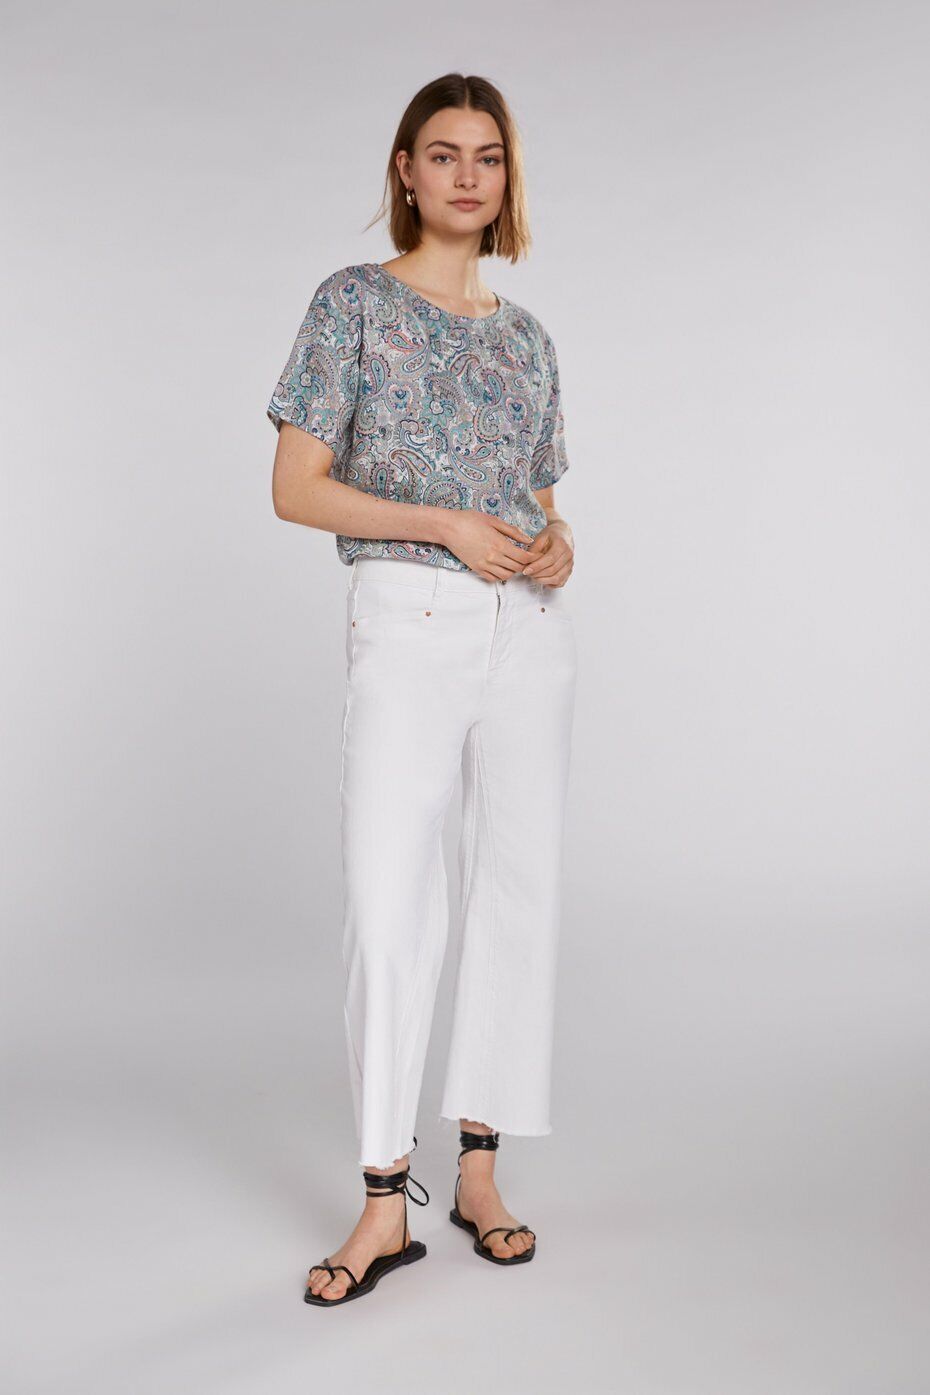 LEINEN-Bluse, Marke Oui, Farbe BlauGrauWeiß , Größe 36, 38, 40